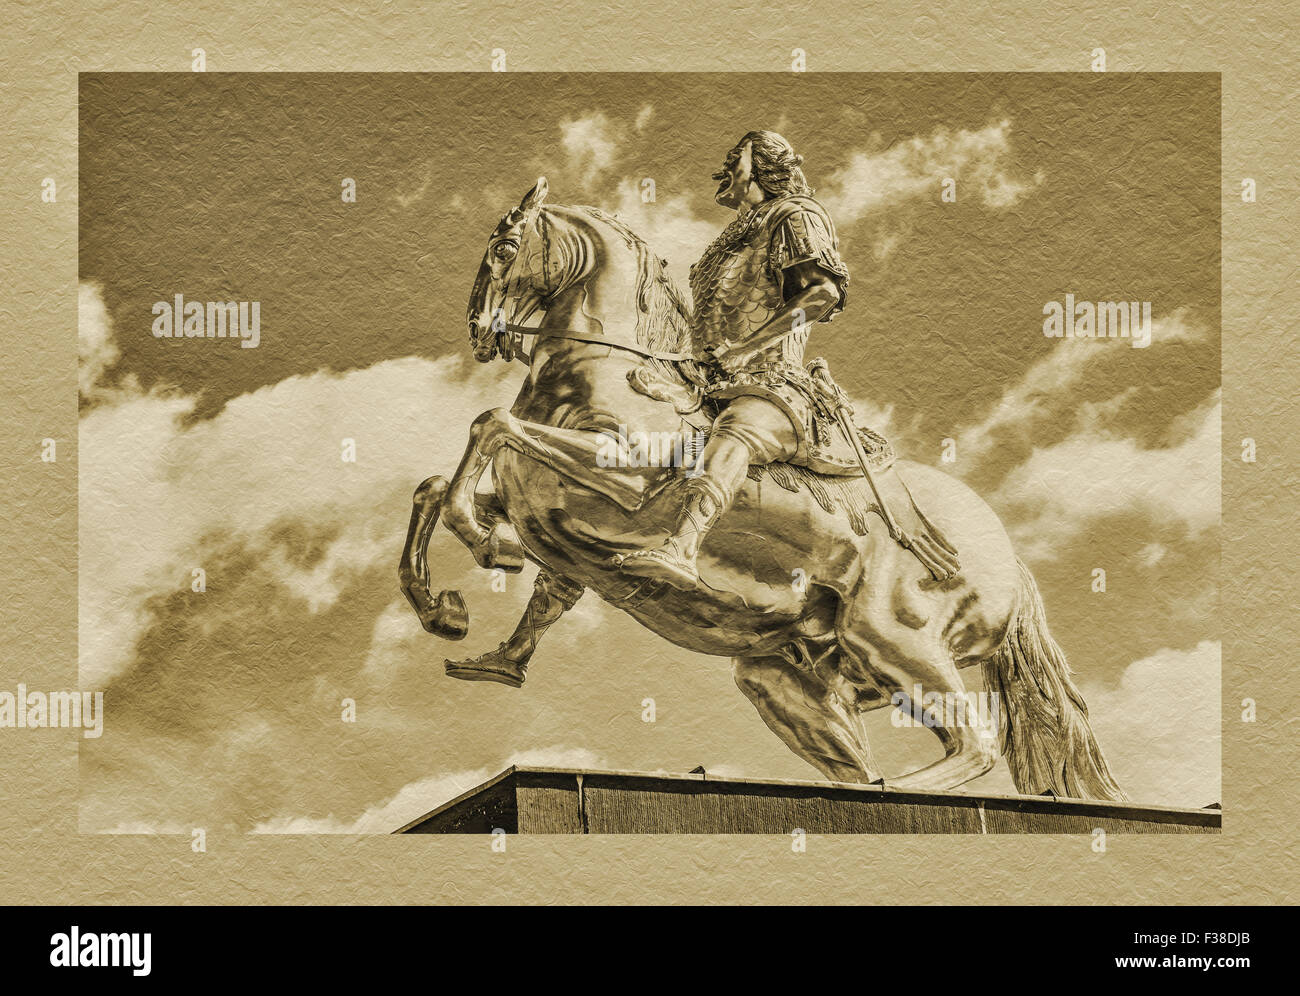 Die goldenen Reiter ist ein Reiterstandbild des sächsischen Kurfürsten und polnischen König August der starke, Dresden, Sachsen, Deutschland Stockfoto